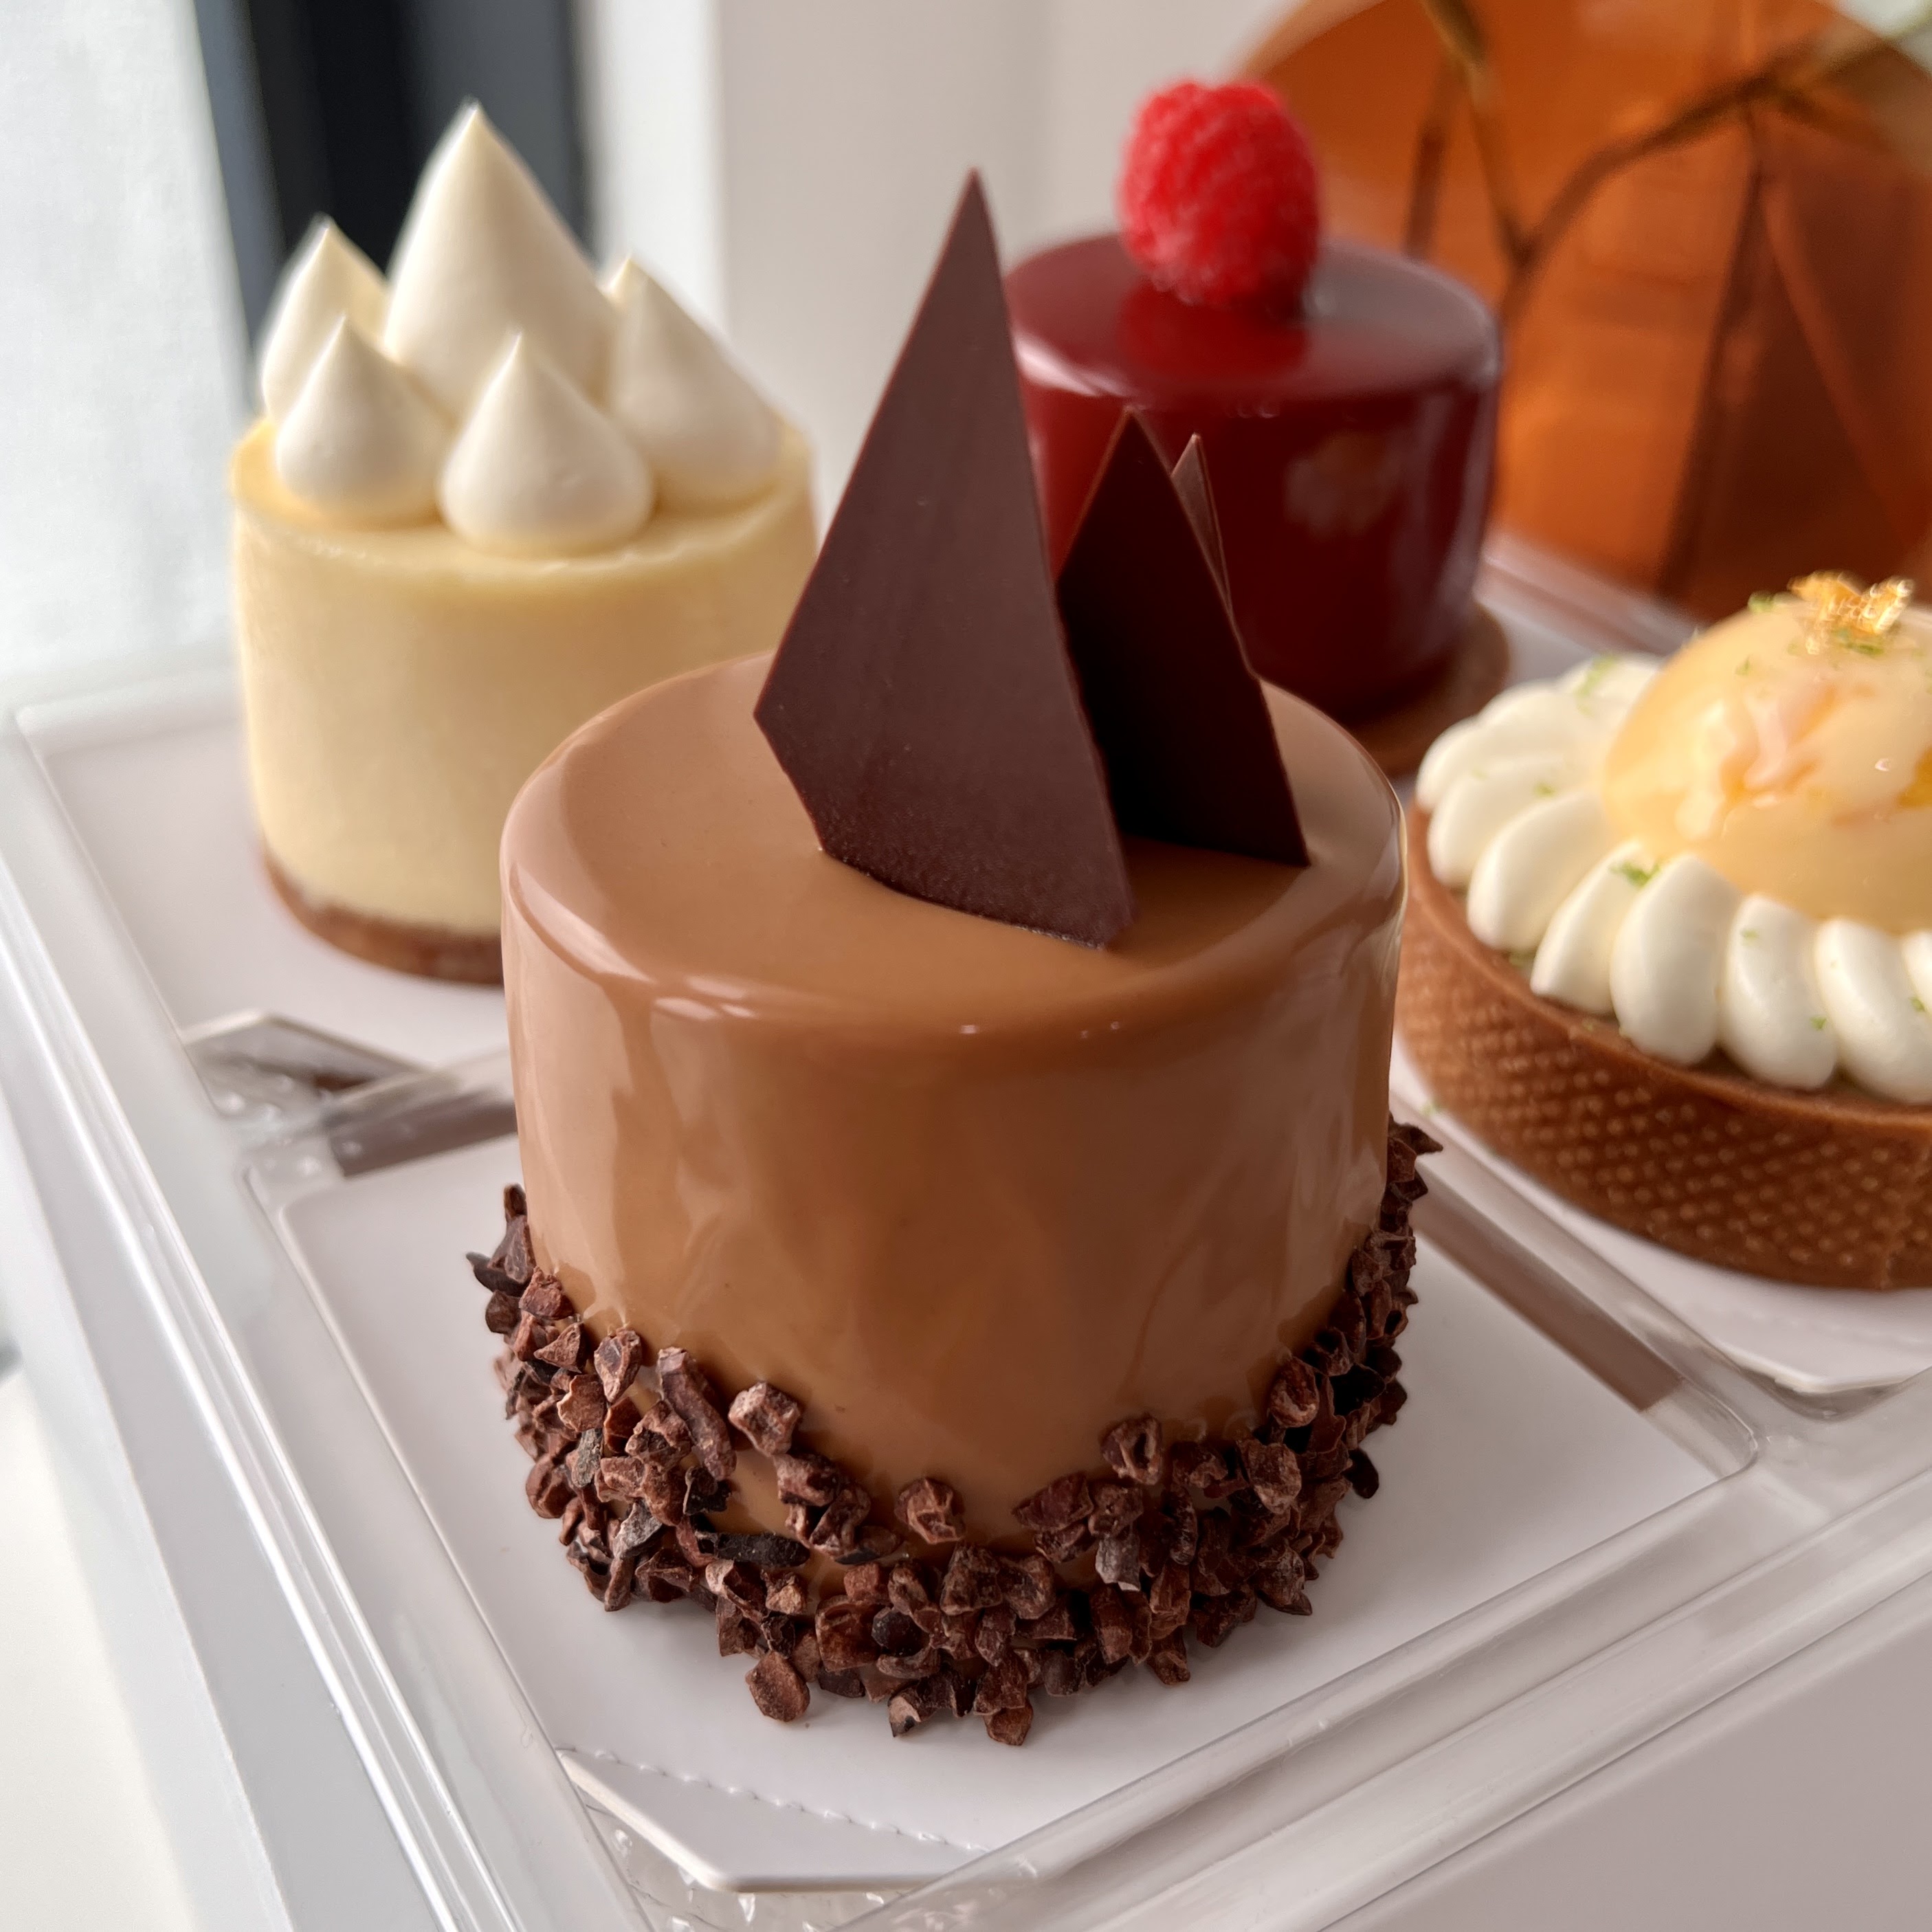 Lachér Patisserie - French desserts 法式甜点 review